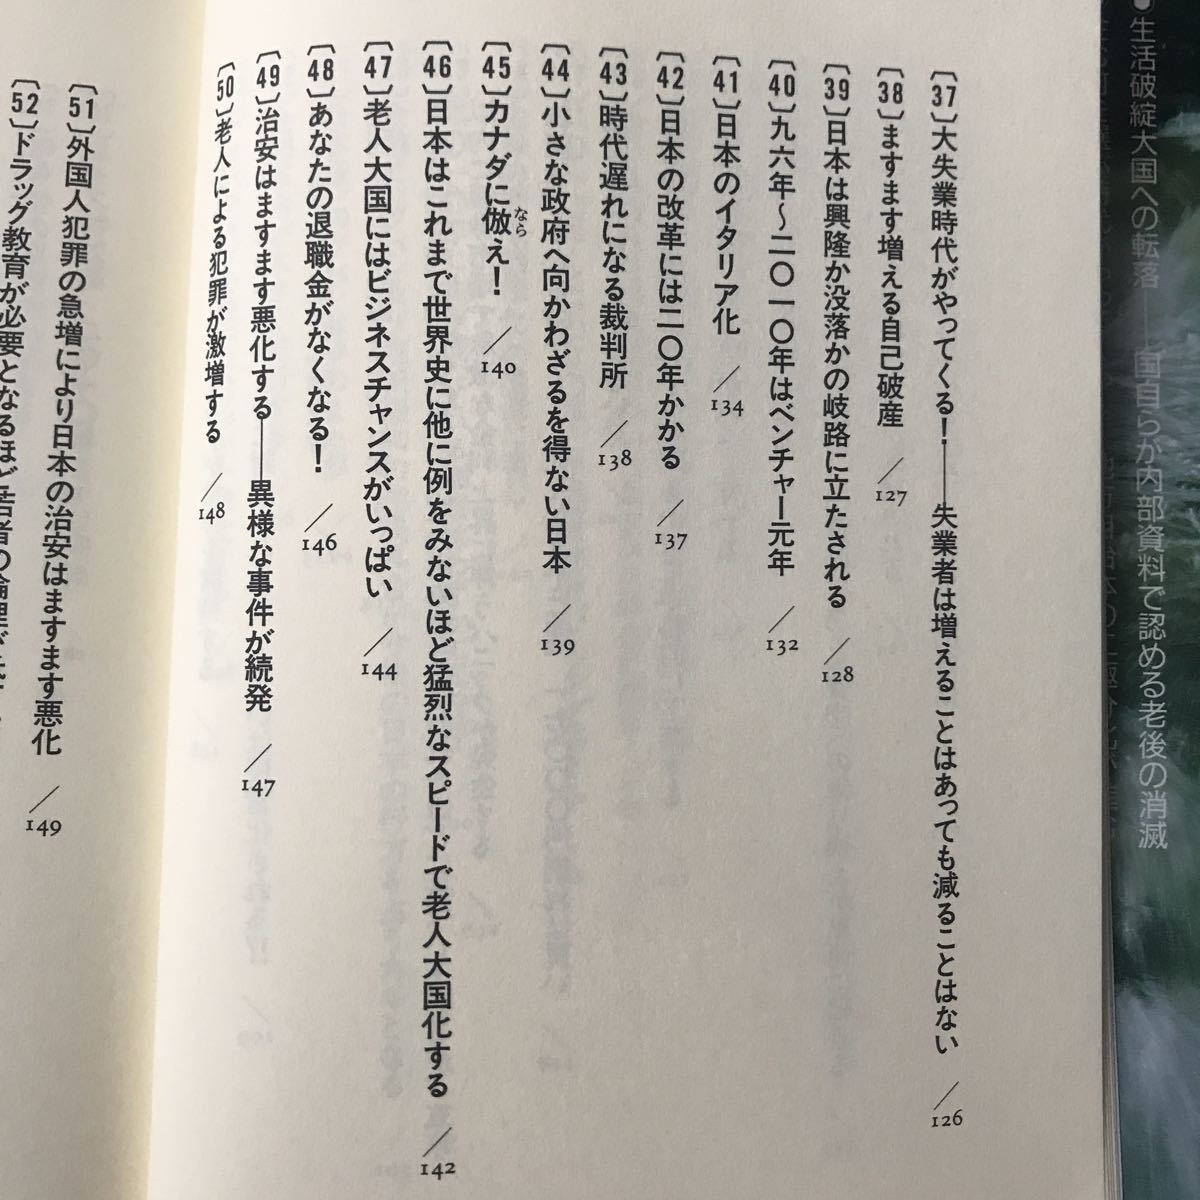 98-2010年に起きる100の出来事 浅井隆 第二海援隊 ISBN4-925041-19-3